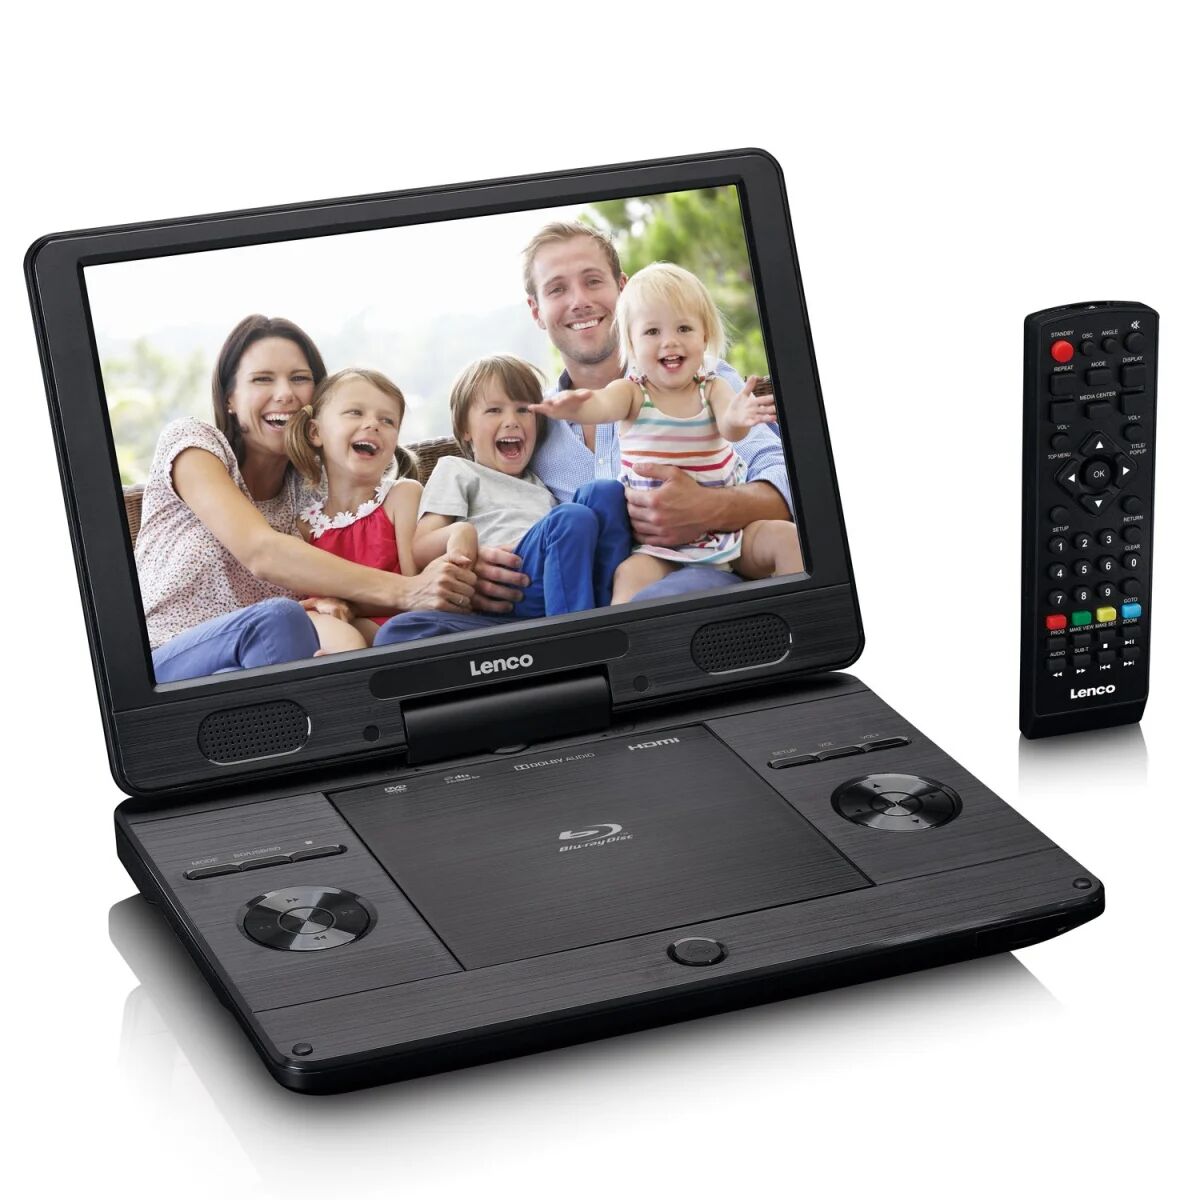 Lenco BRP-1150BK lettore DVD/Blu-Ray portatile Lettore Blu-ray Convertibile 29,2 cm (11.5") 1024 x 600 Pixel Nero [BRP-1150BK]